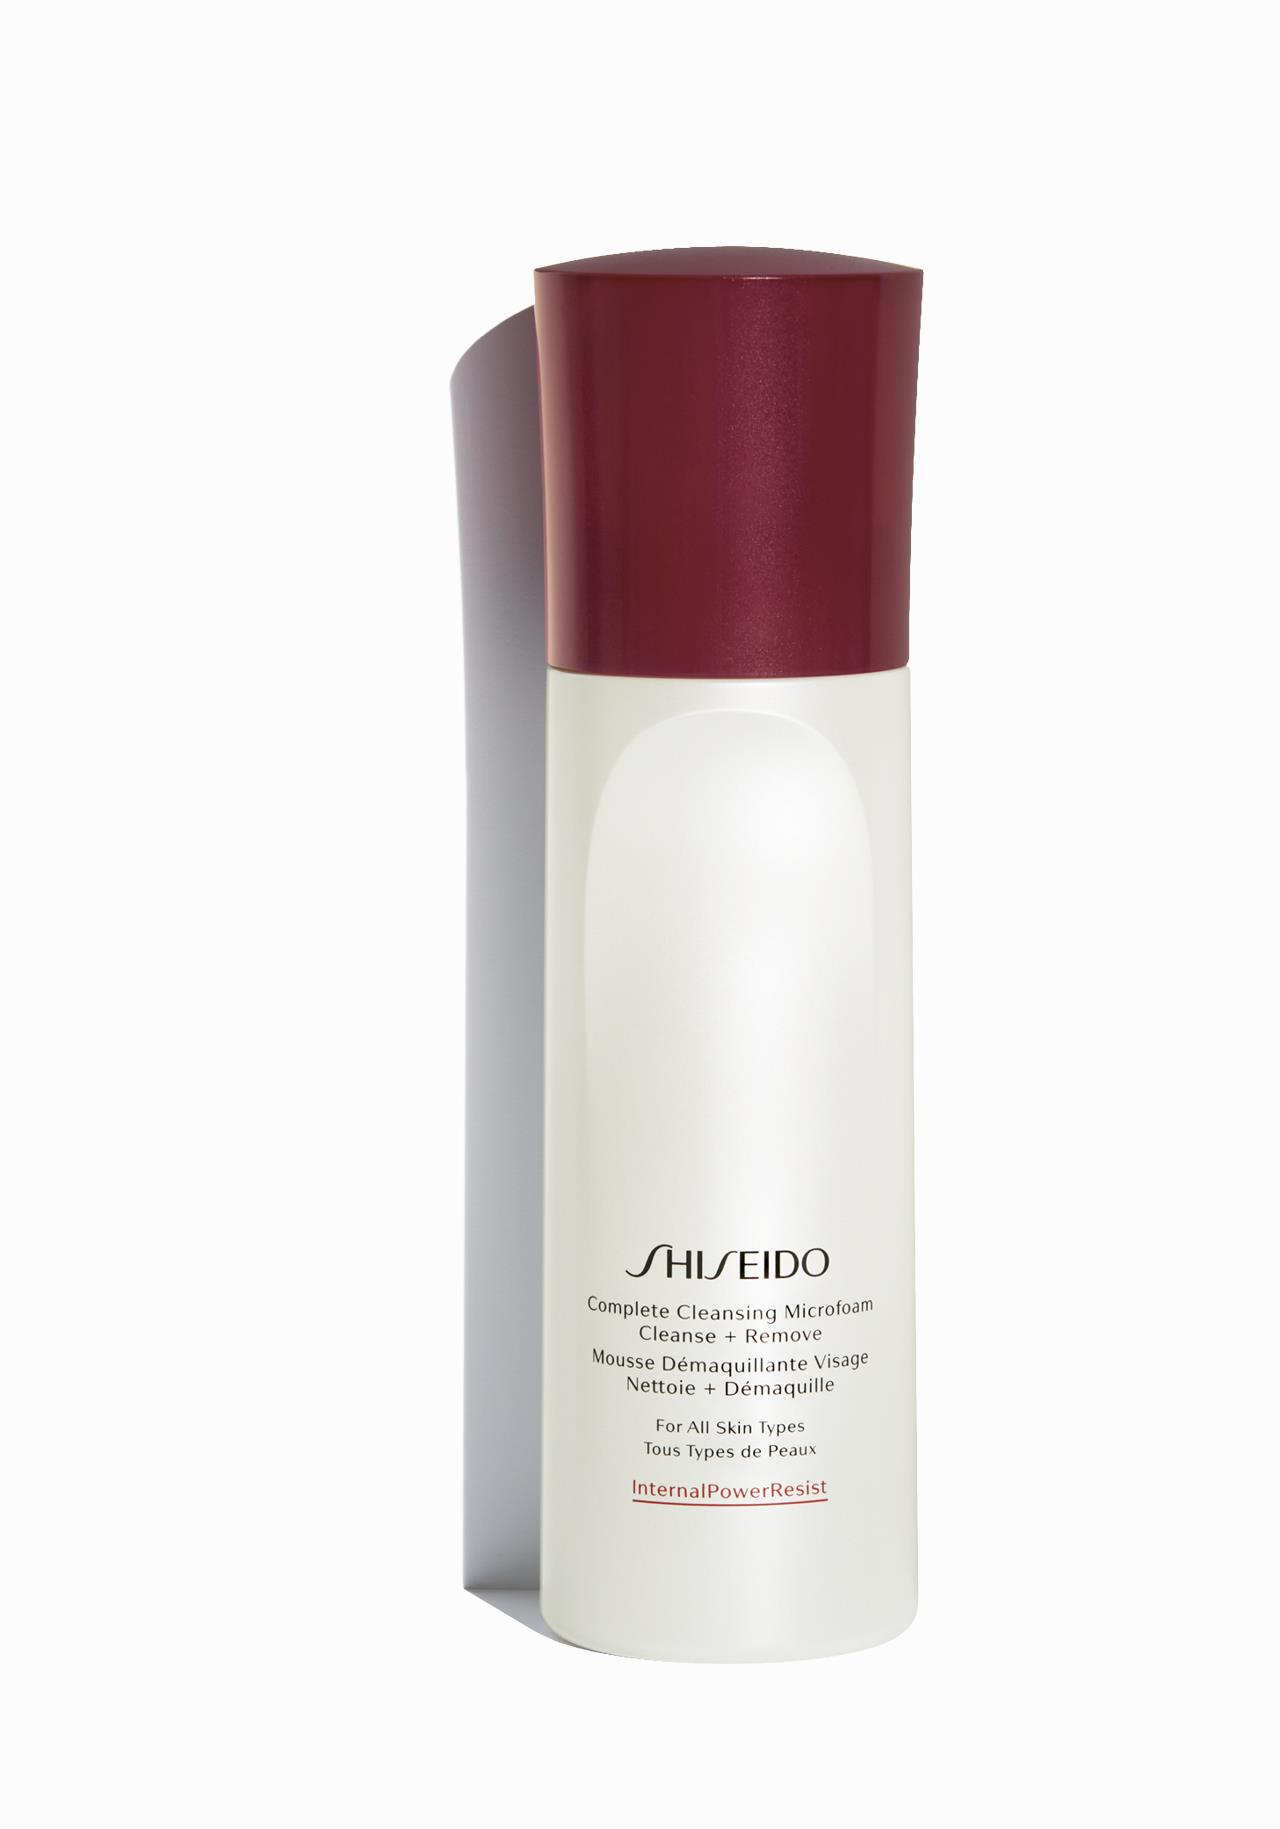 Espuma limpiadora Complete Cleansing Microfoam de Shiseido Los 7 desmaquillantes más rápidos y eficaces para "el día después" 2019